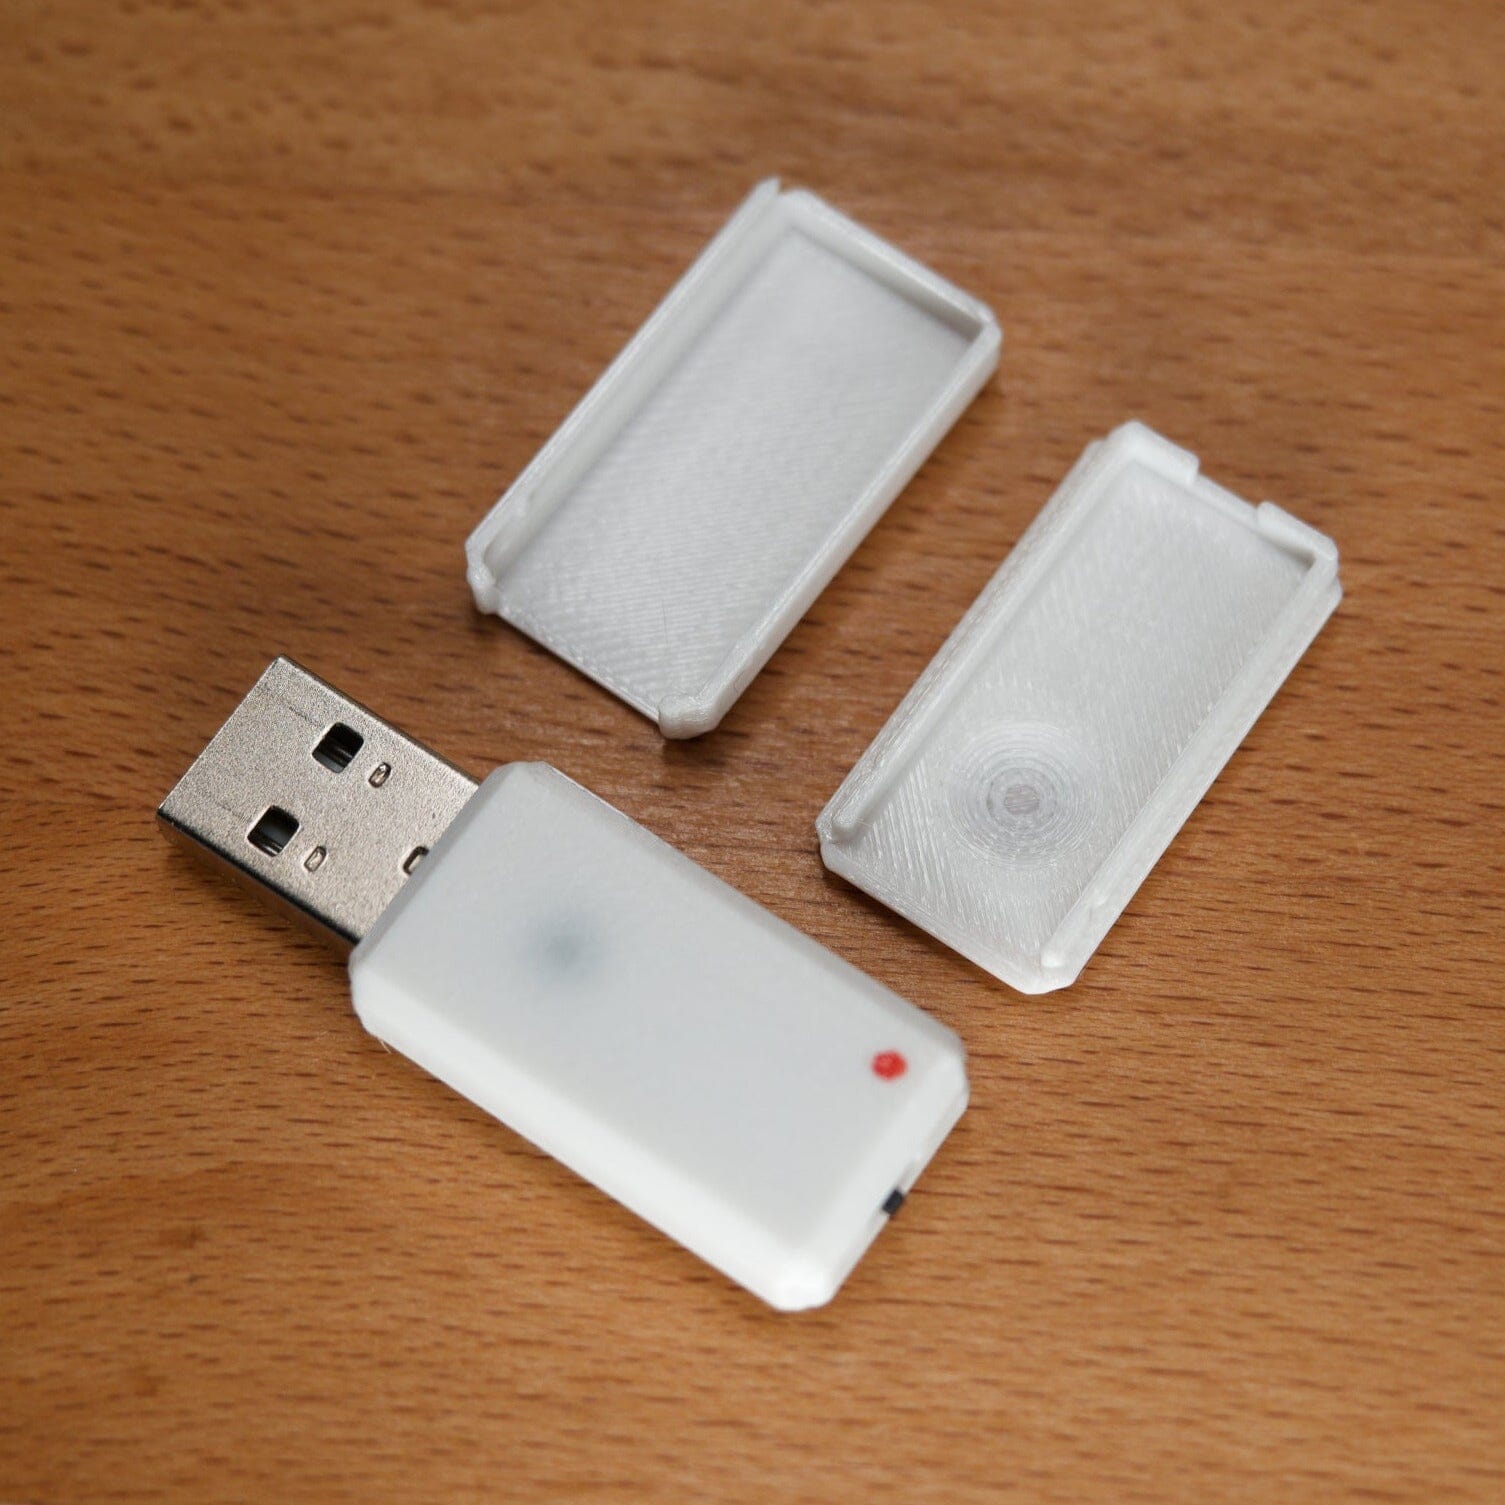 USB Nova with white Case